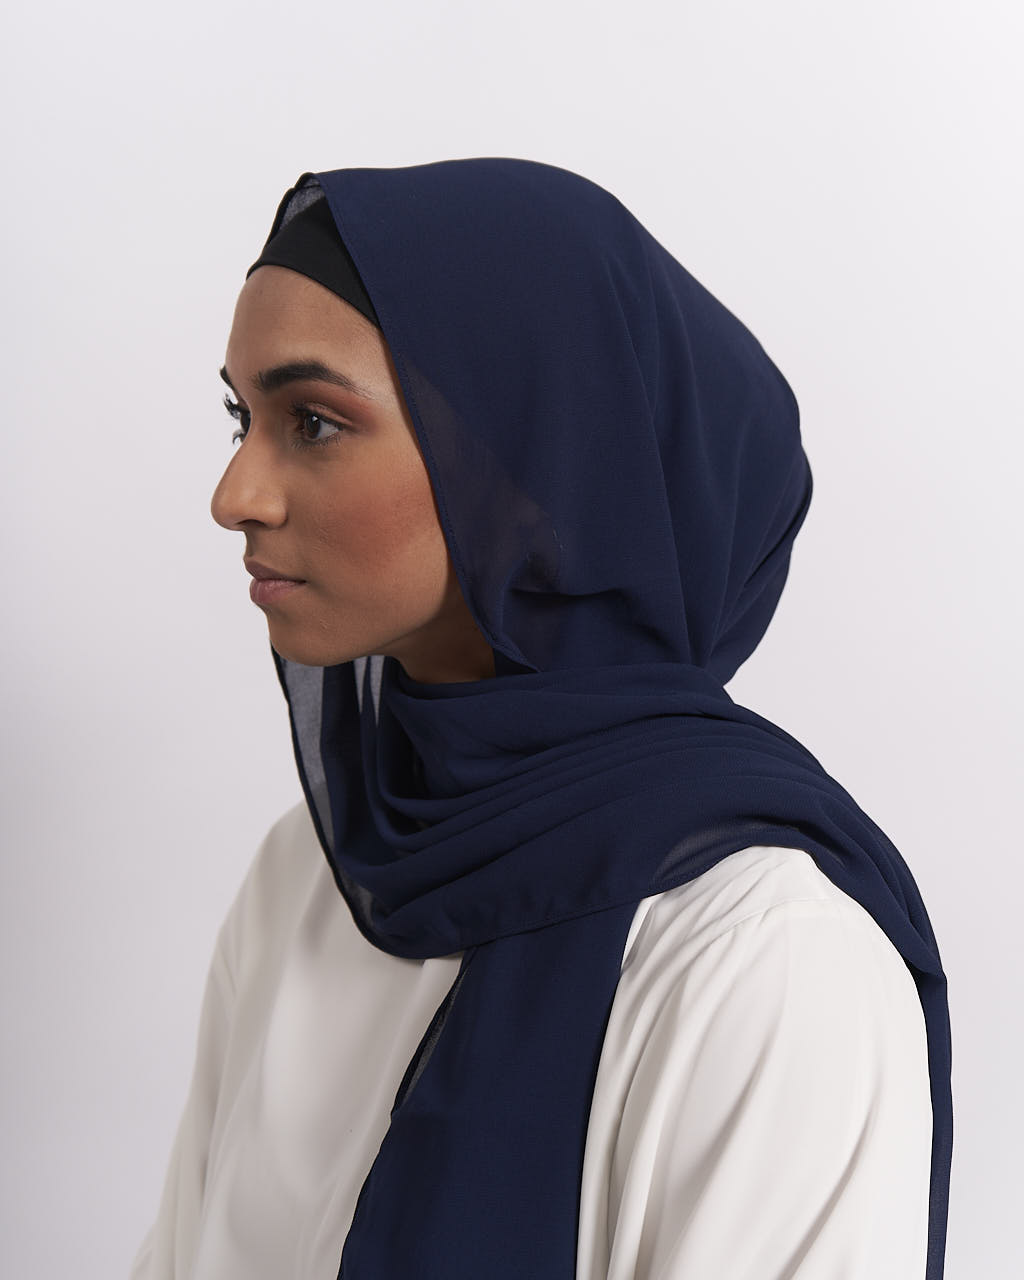 Chiffon Hijab and Matching Hijab Cap